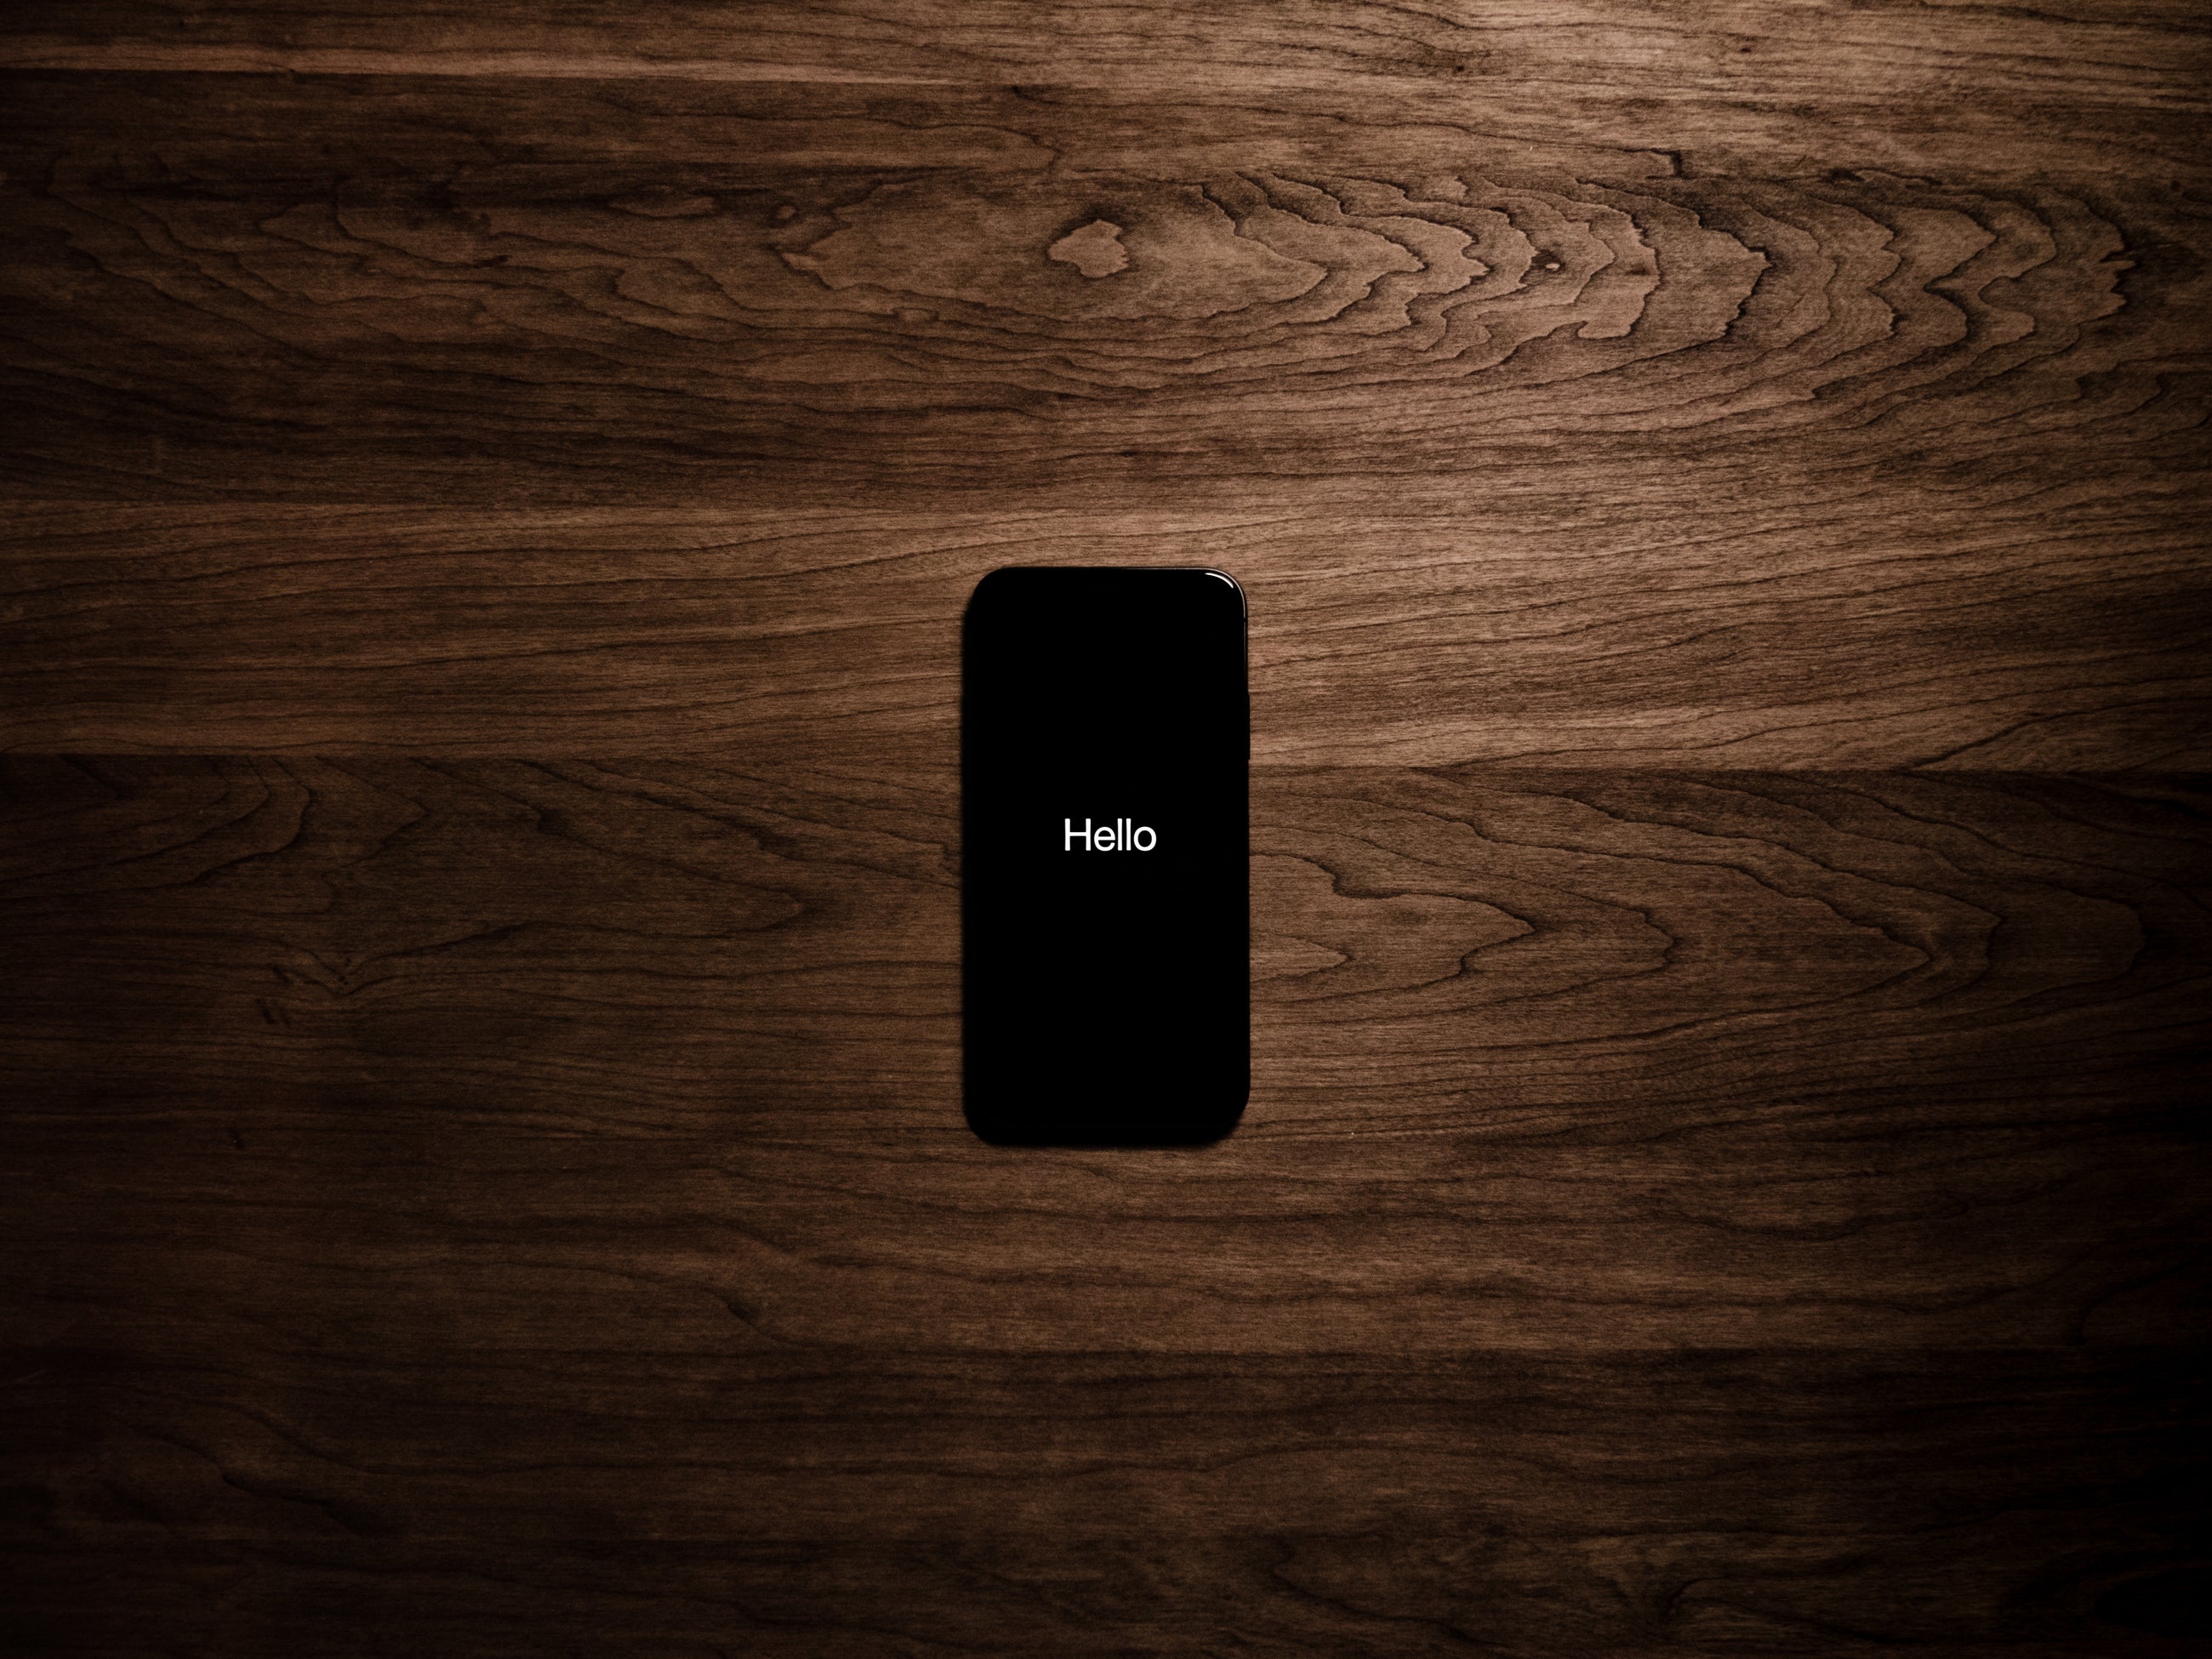 Ein Handy auf dem Hello steht und das auf einem Holztisch liegt.